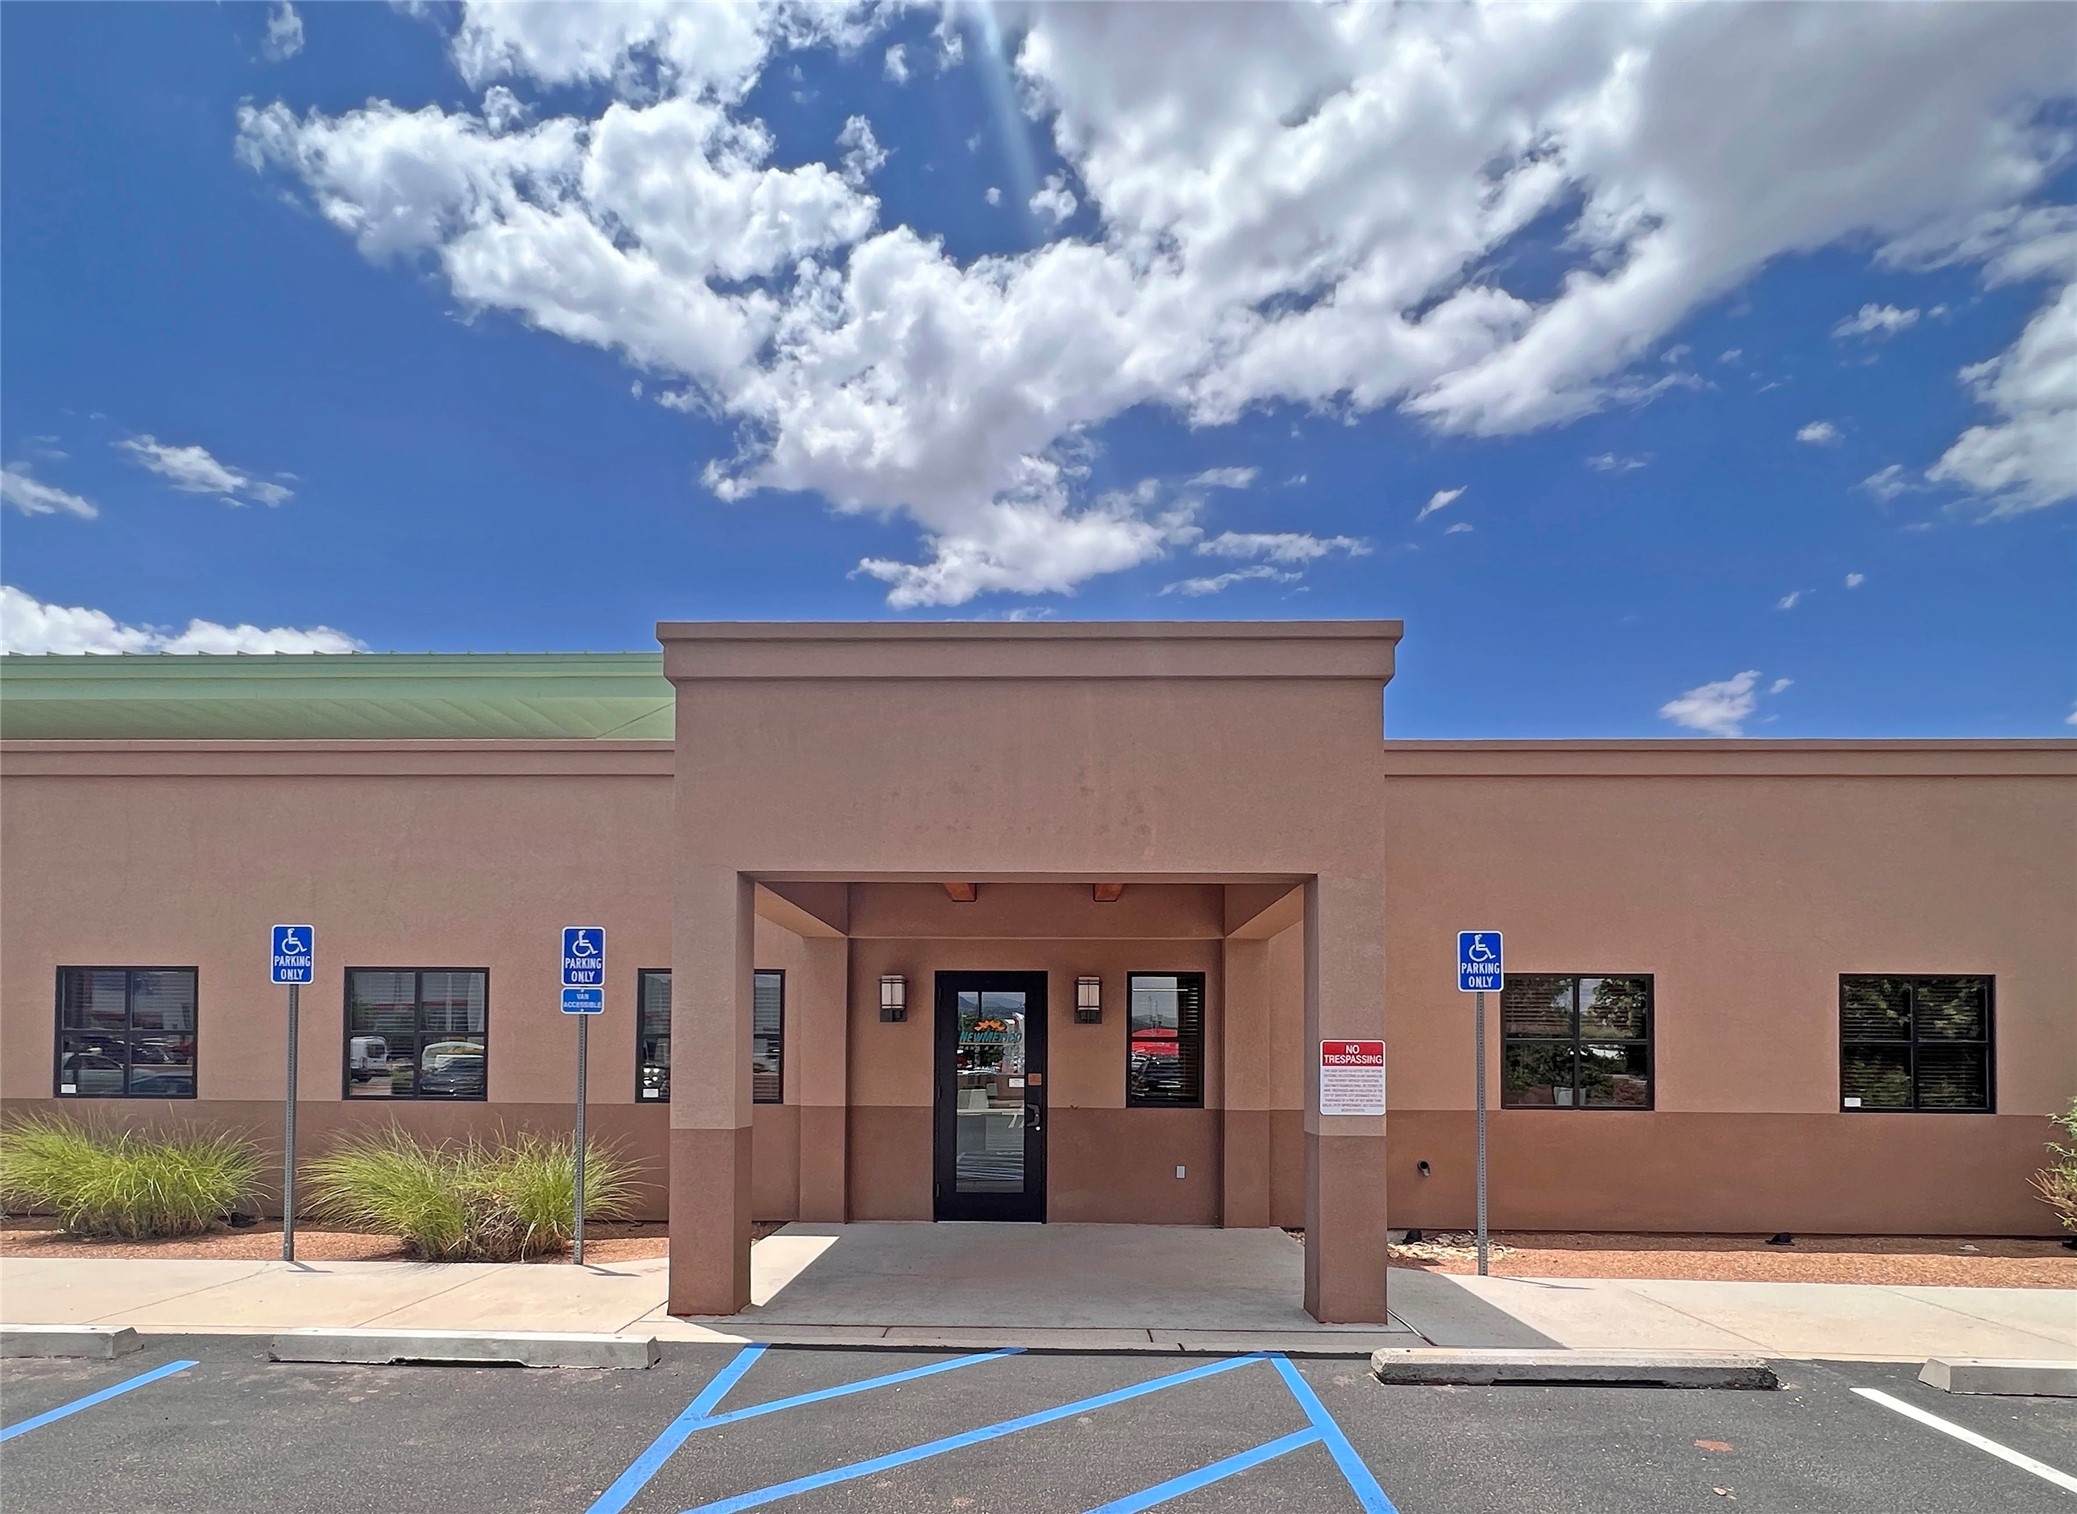 1592 Saint Michaels Drive, Santa Fe, New Mexico 87505, ,Commercial Lease,For Rent,1592 Saint Michaels Drive,202340489